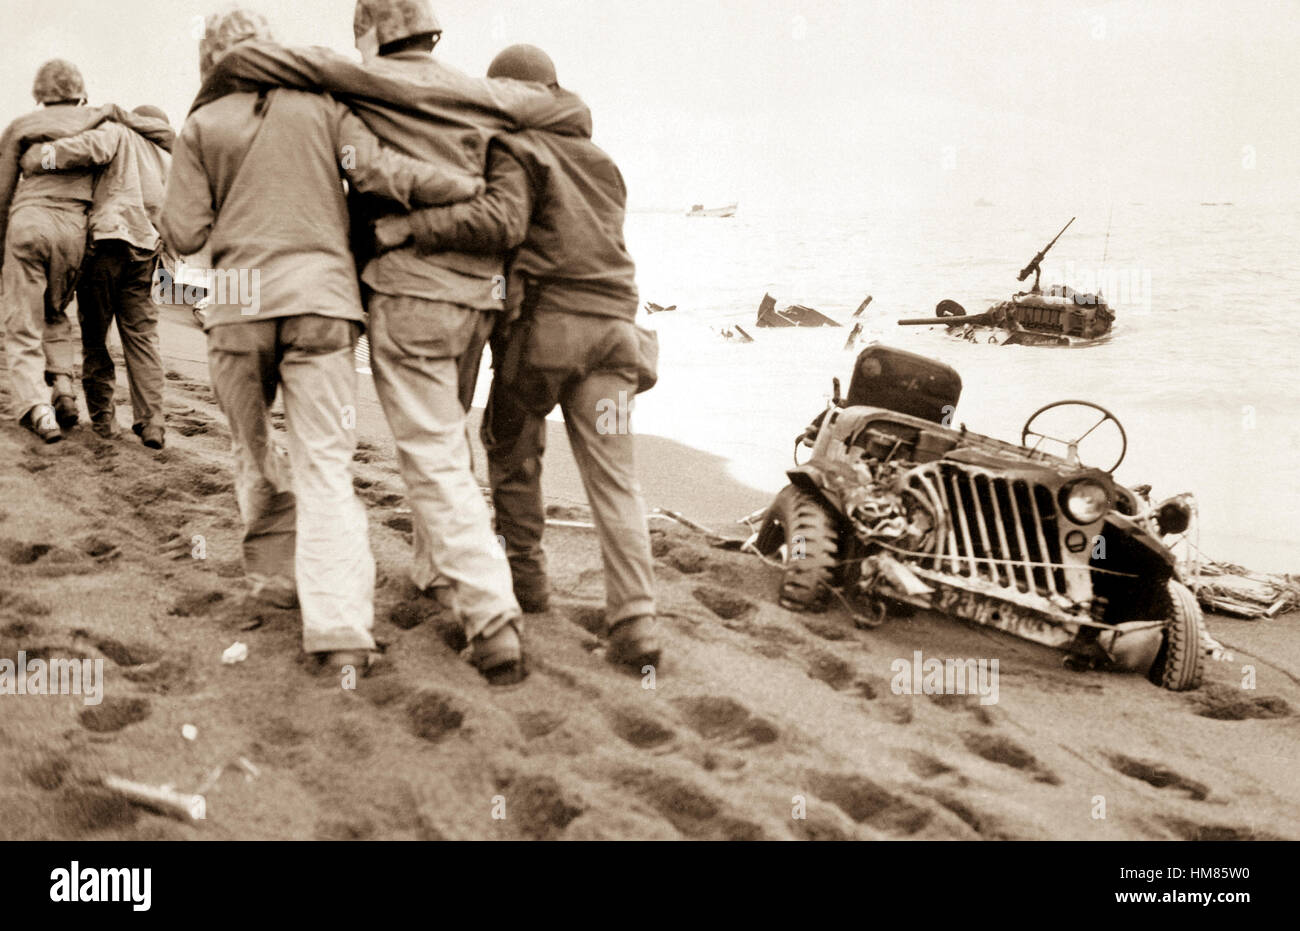 Sie trugen ihren Teil.  Verwundete Marines werden von Navy Sanitätern und Marine zu verletzten Fuß zu einer Notfallstation geholfen.  Iwo Jima, ca.  Februar/März 1945. CPL. Eugene Jones. (Marine Corps) Genaues Datum erschossen unbekannte NARA Datei #: 127-G-110244 Krieg & Konflikt #: 908 Stockfoto